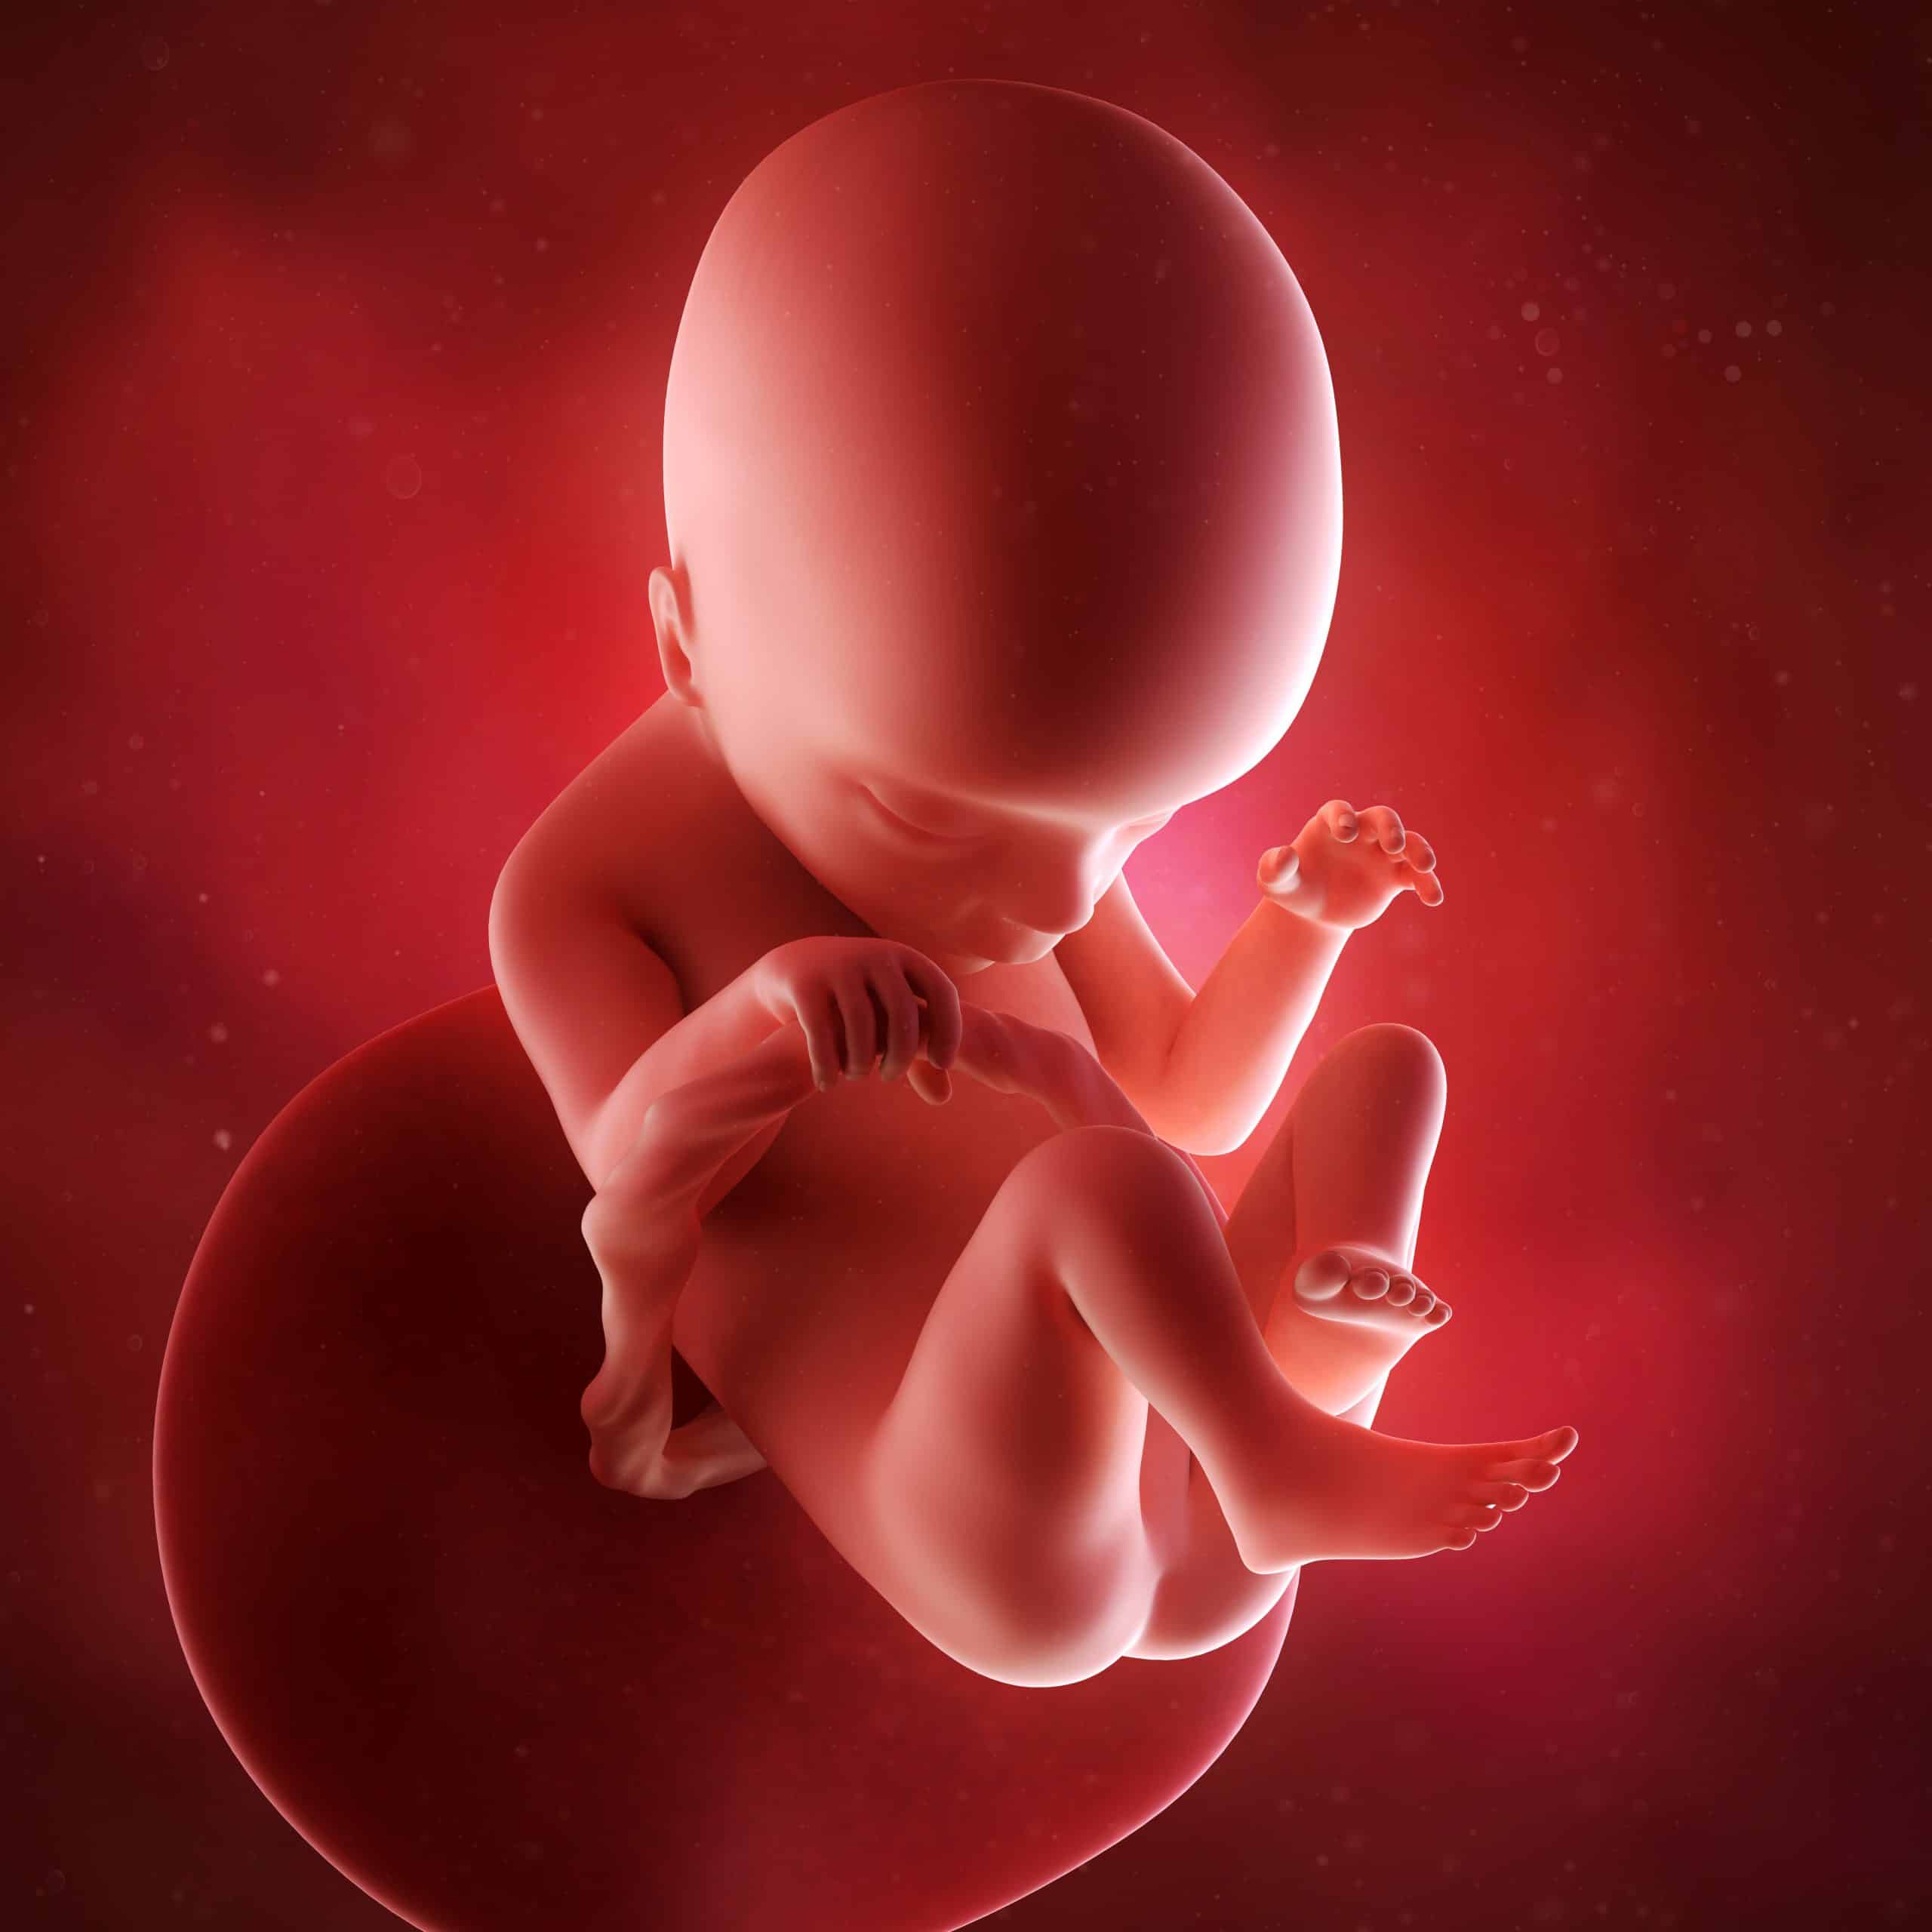 18 week fetus